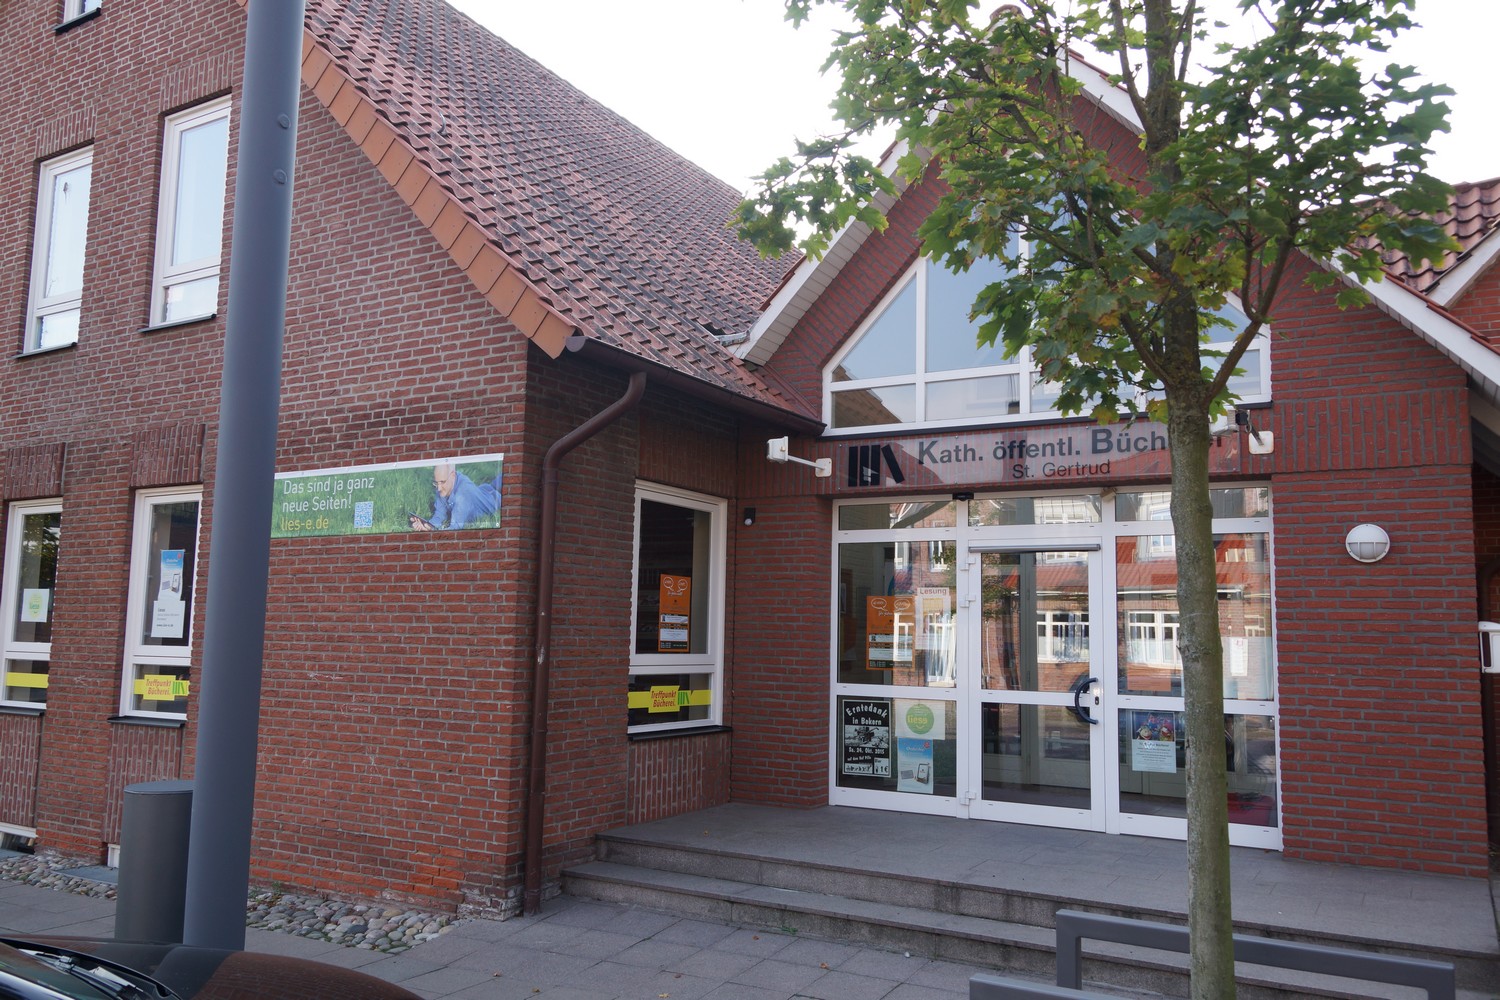 Kath. öffentliche Bücherei St. Gertrud